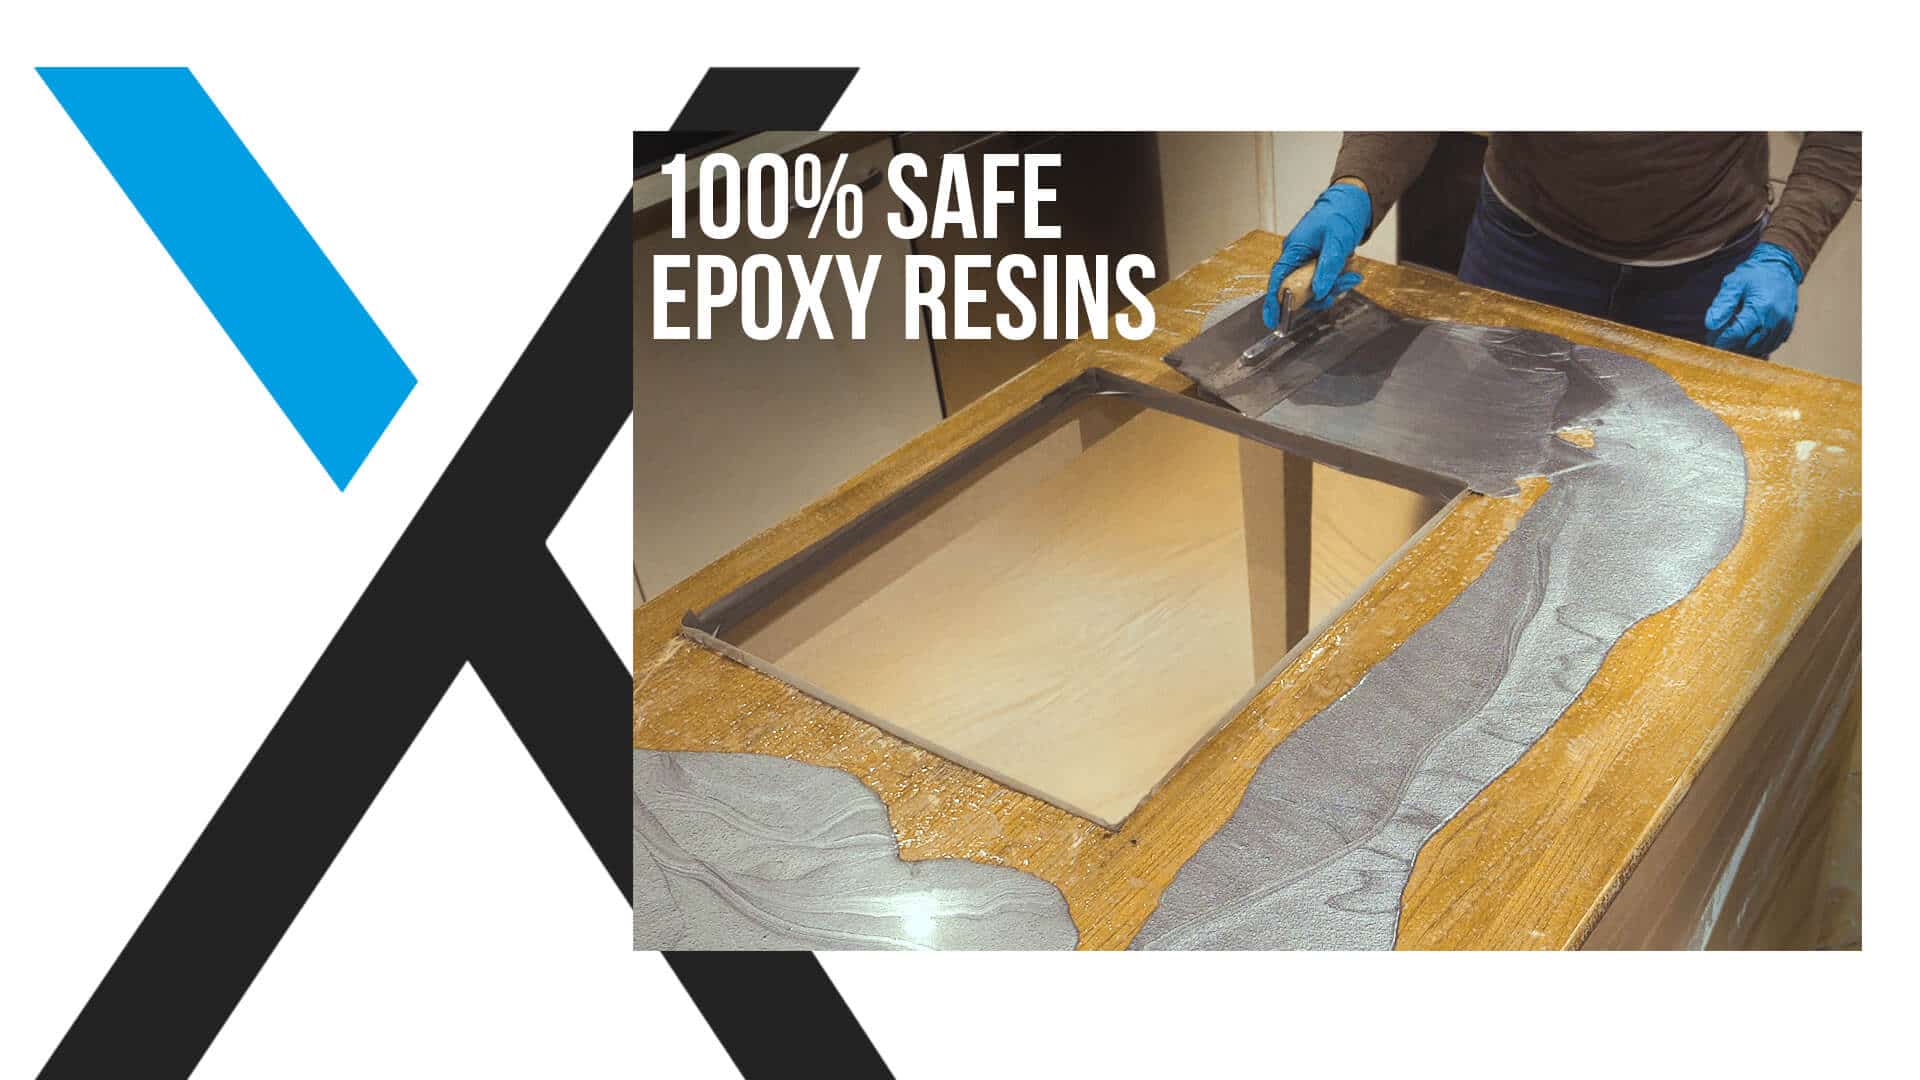 countertop epoxy resin